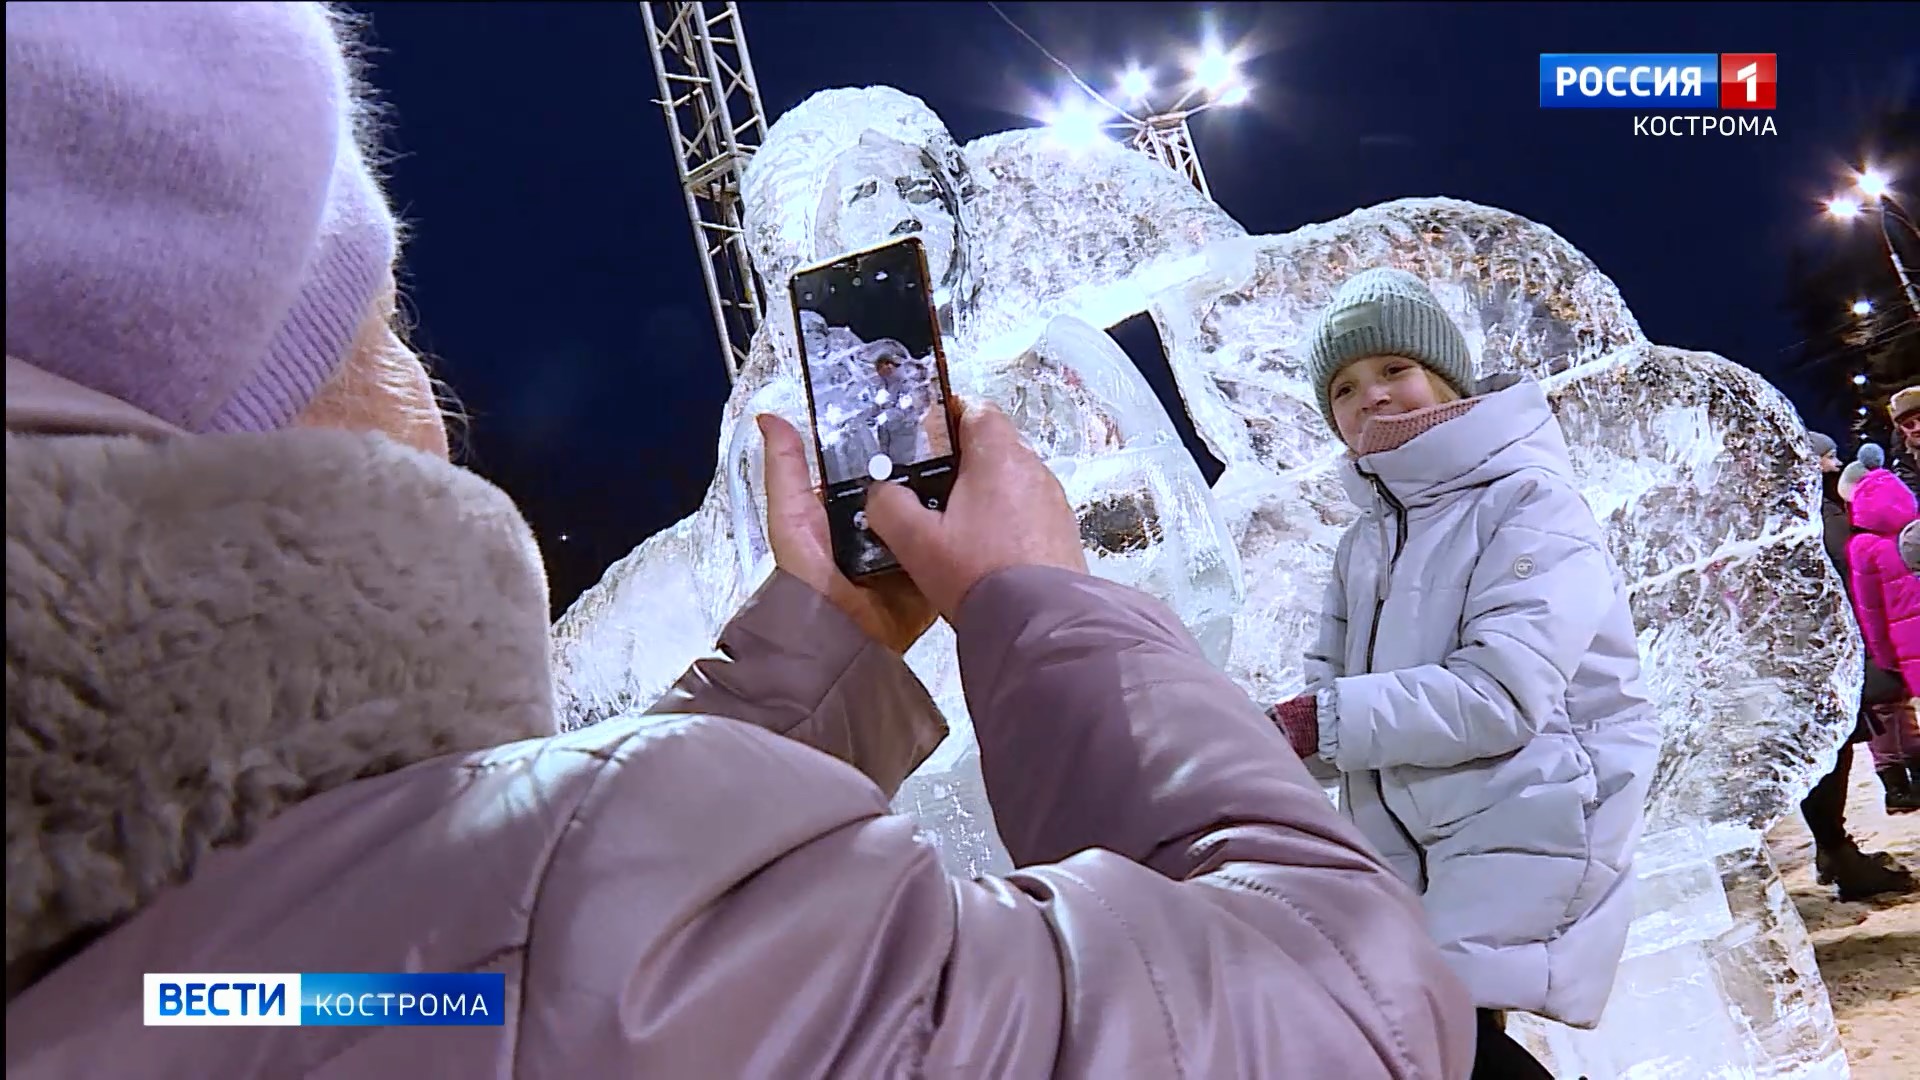 Живая красота ледяных статуй в центре Костромы сохранилась лишь в электронном виде